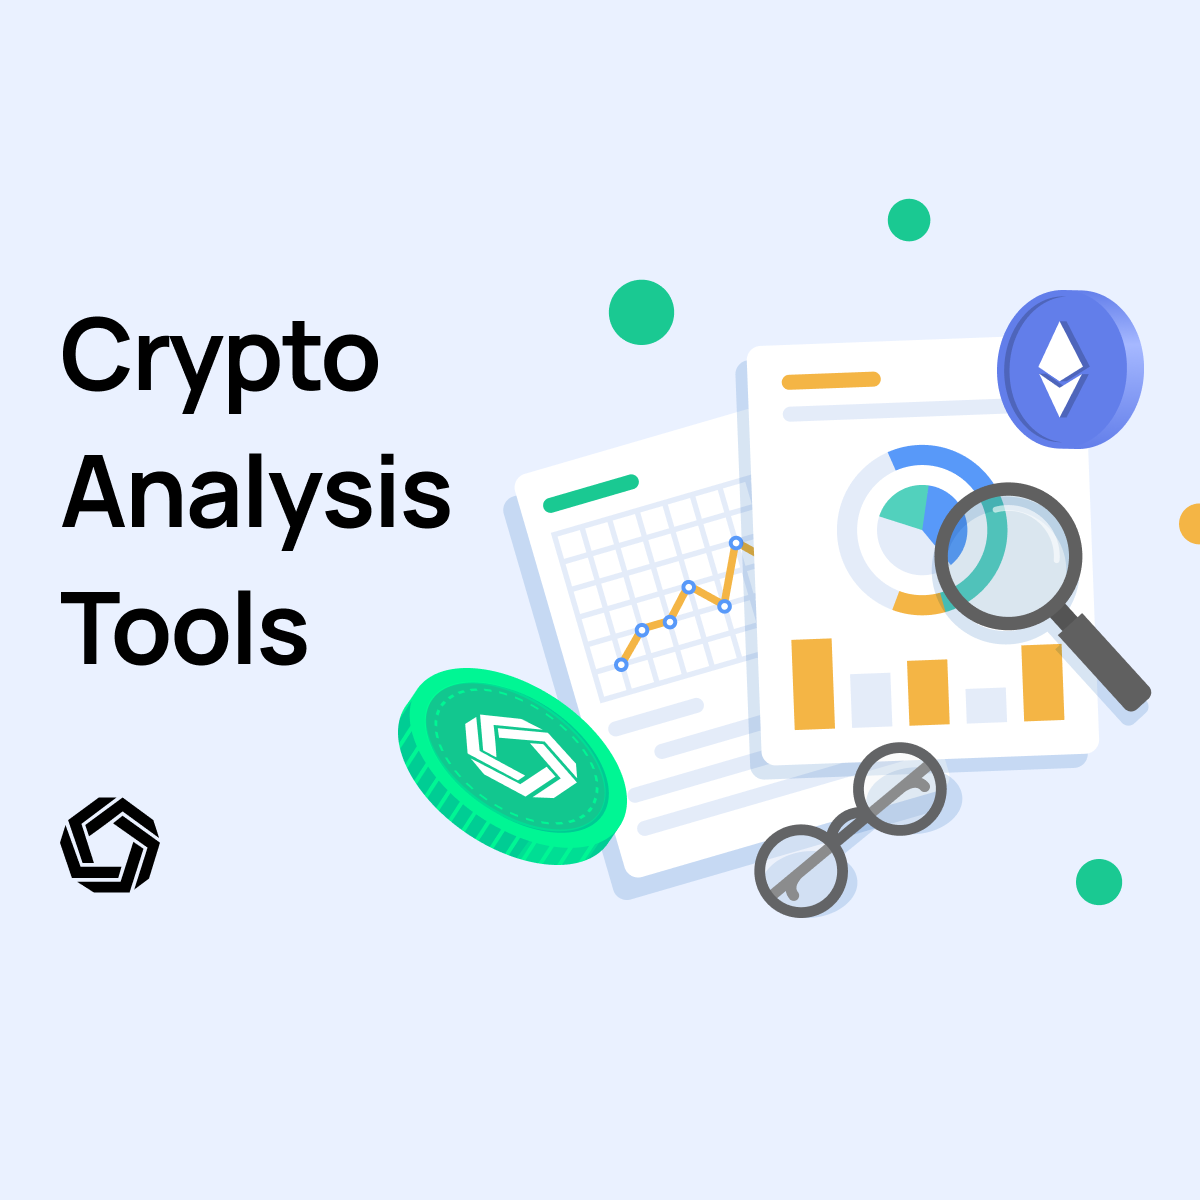 Crypto Analysis Tools